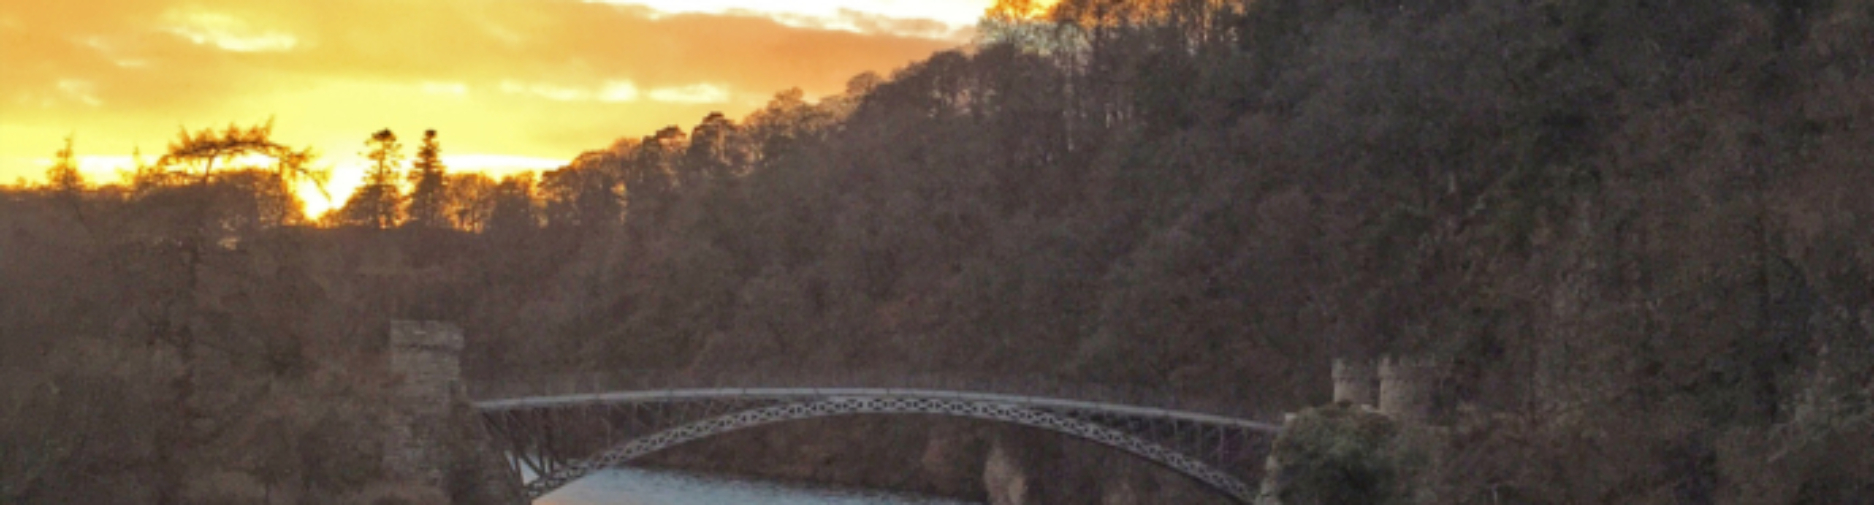 Craigellachie-Bridge-Sunset-691x261_c